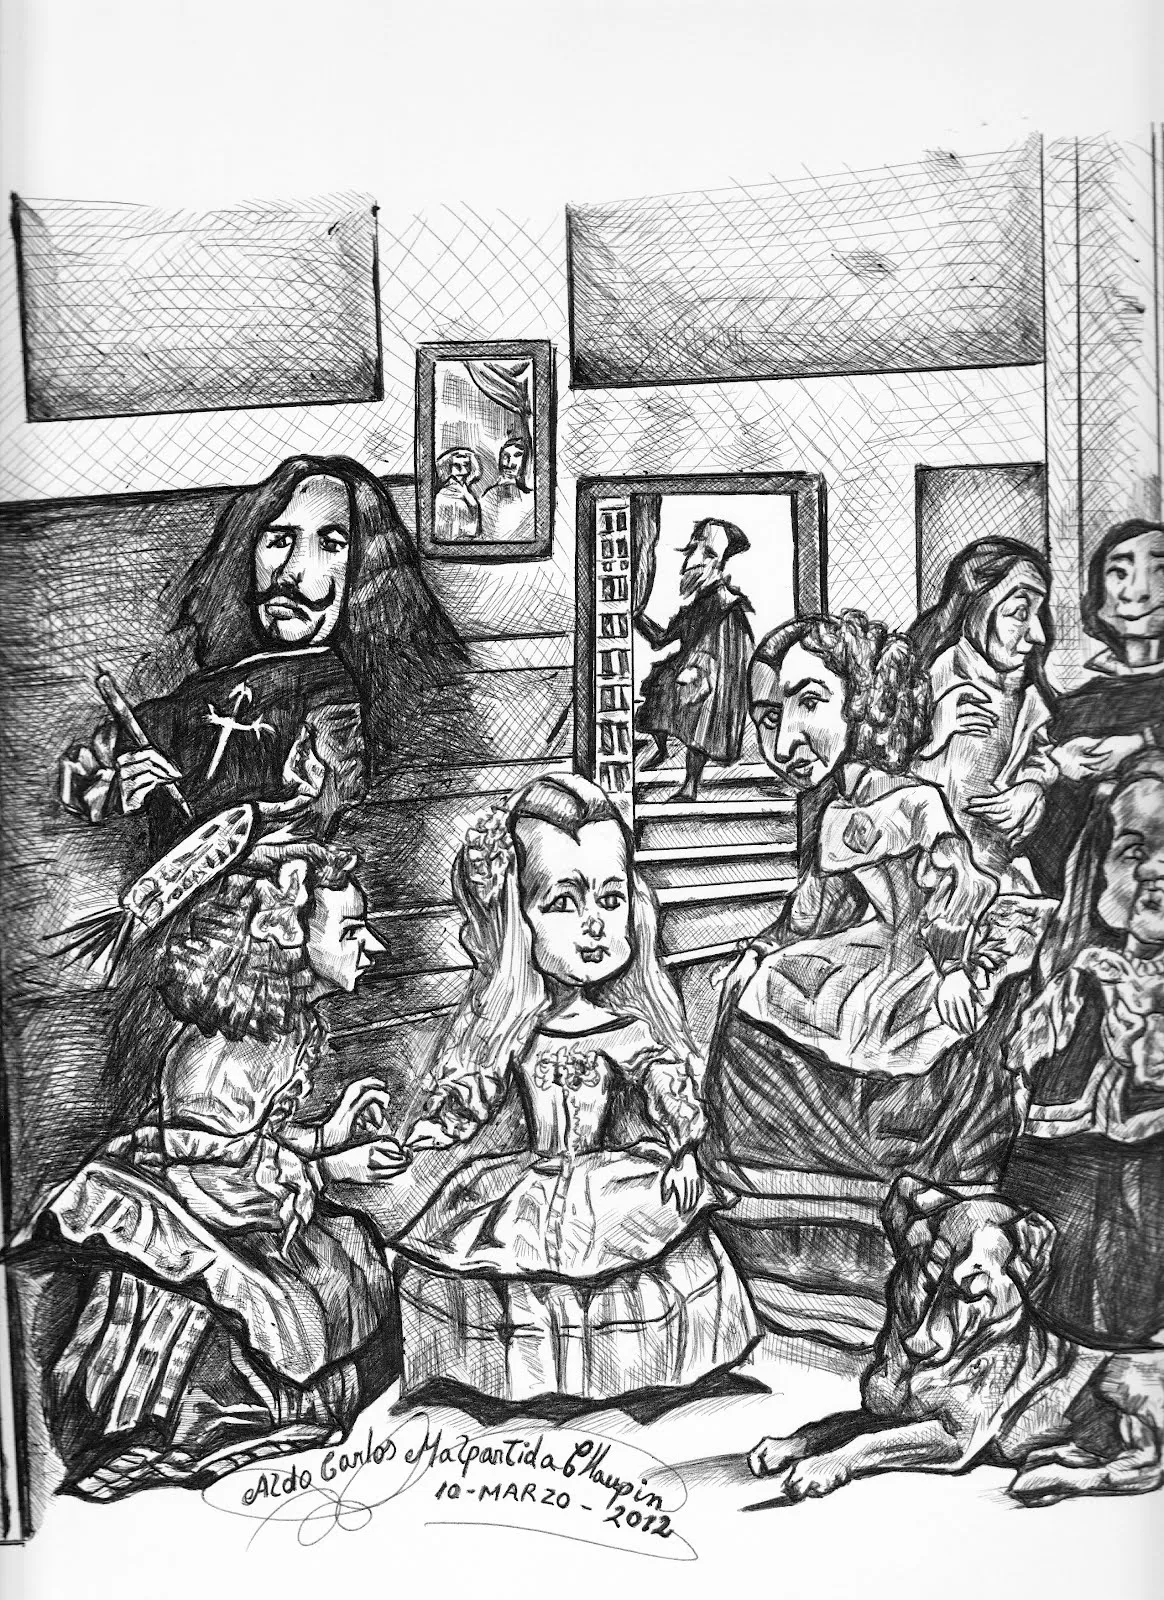 Aldo Dibujo Pintura y Artes: Caricatura del Cuadro: “Las Meninas ...